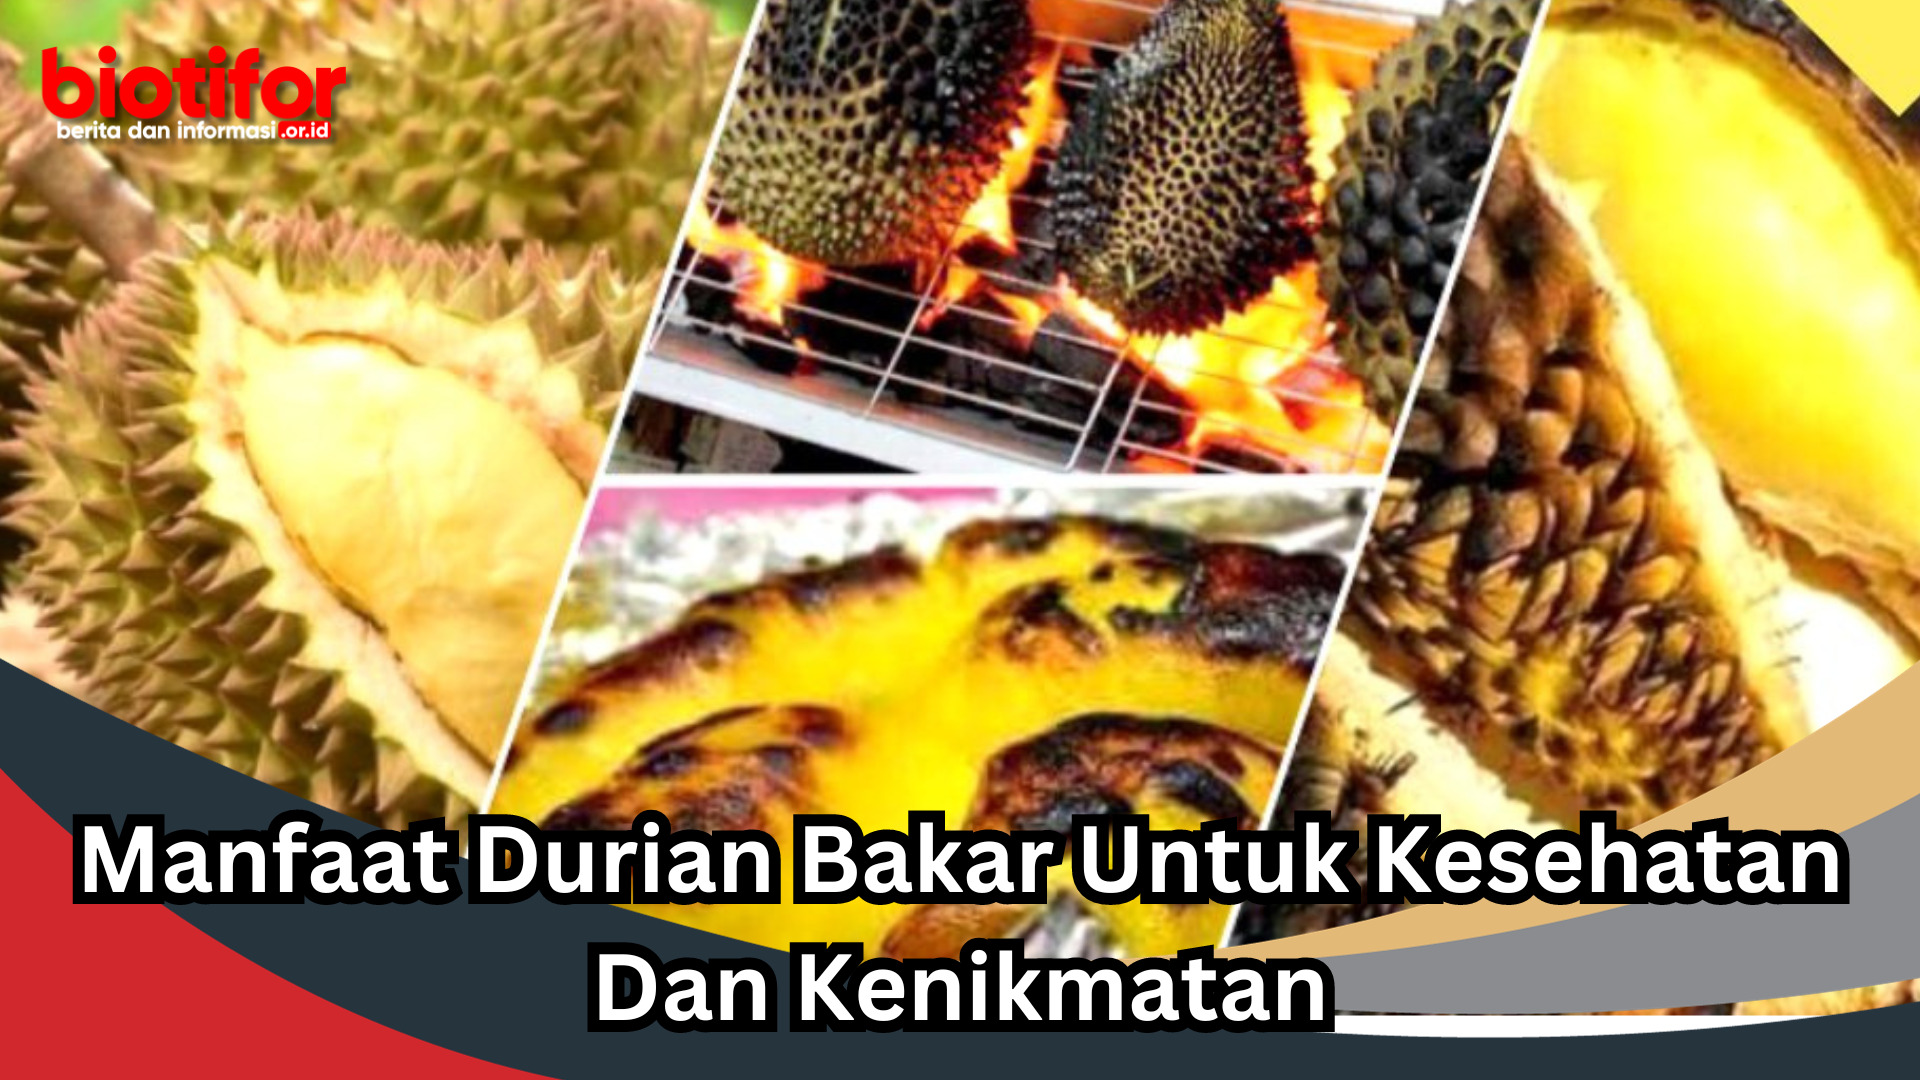 Manfaat Durian Bakar